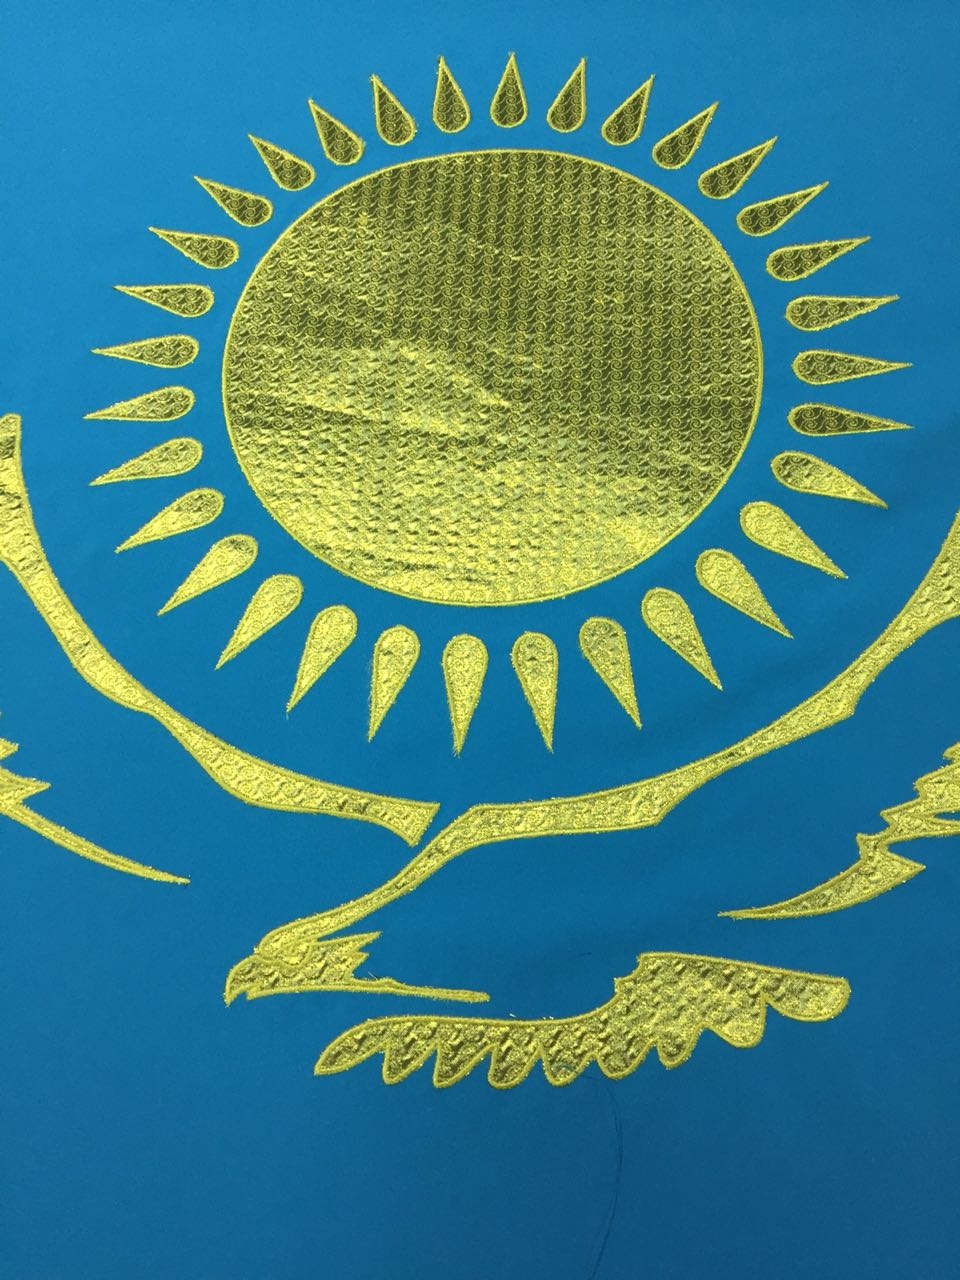 казахстан флаг и герб фото